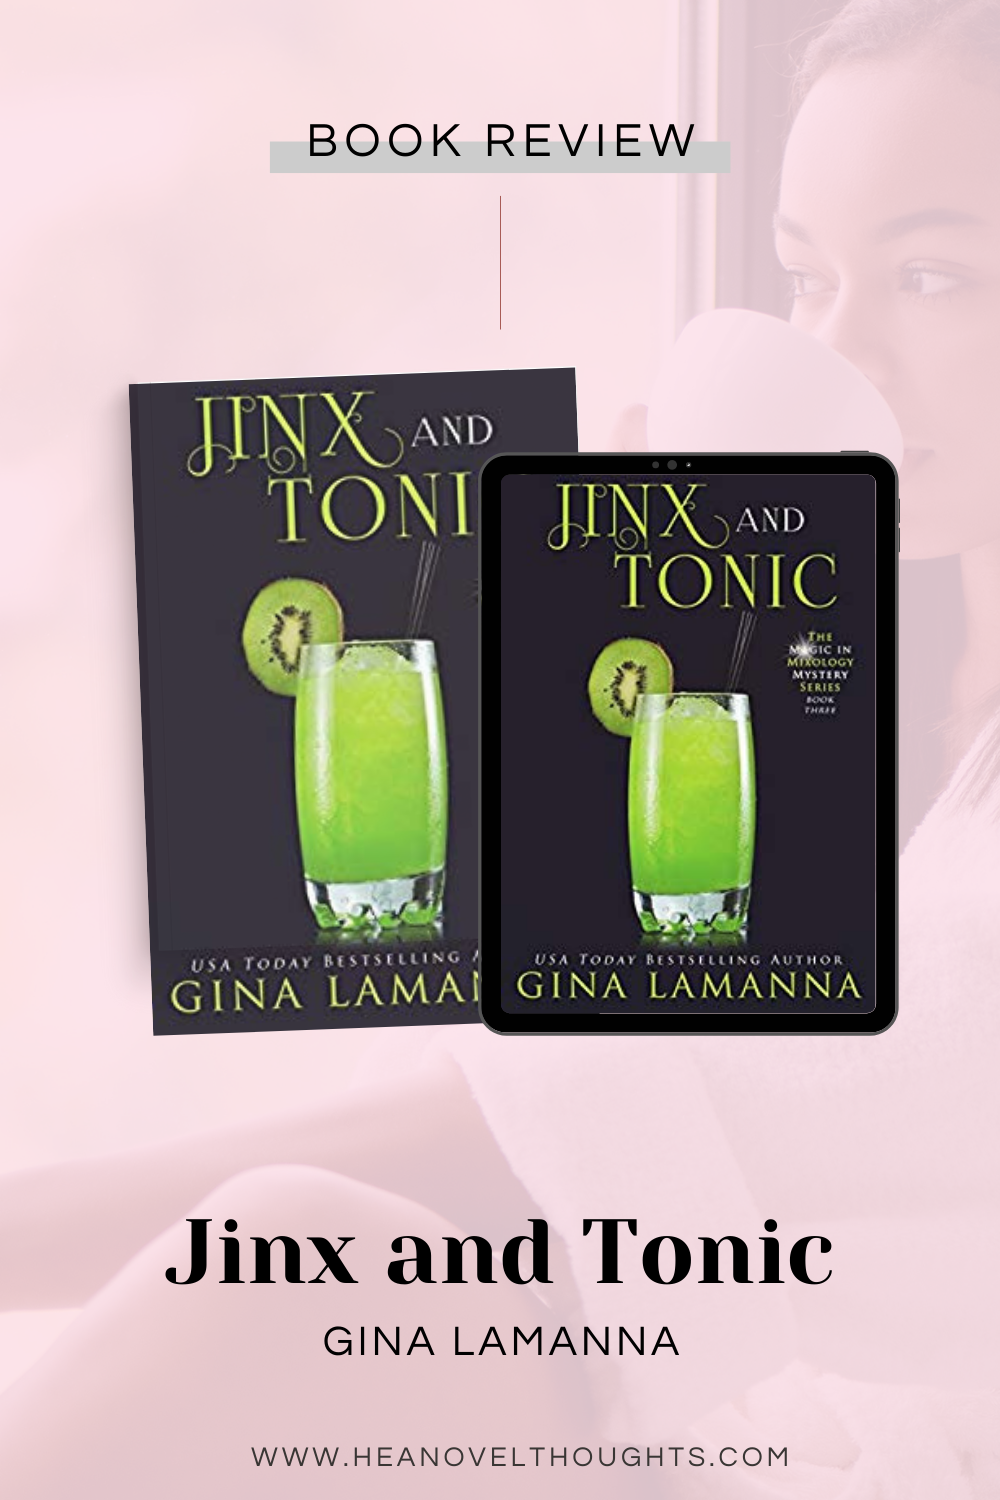 Jinx and Tonic by Gina LaManna